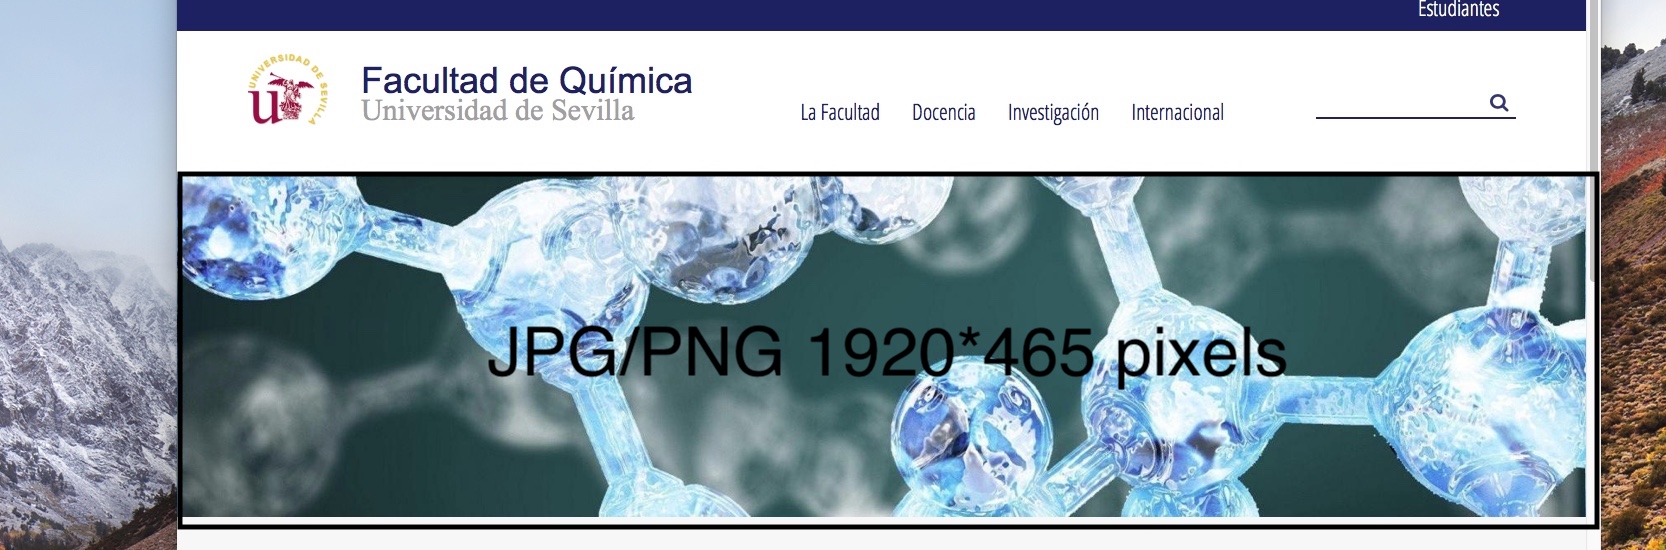 Imagen muestra slider qimiuca